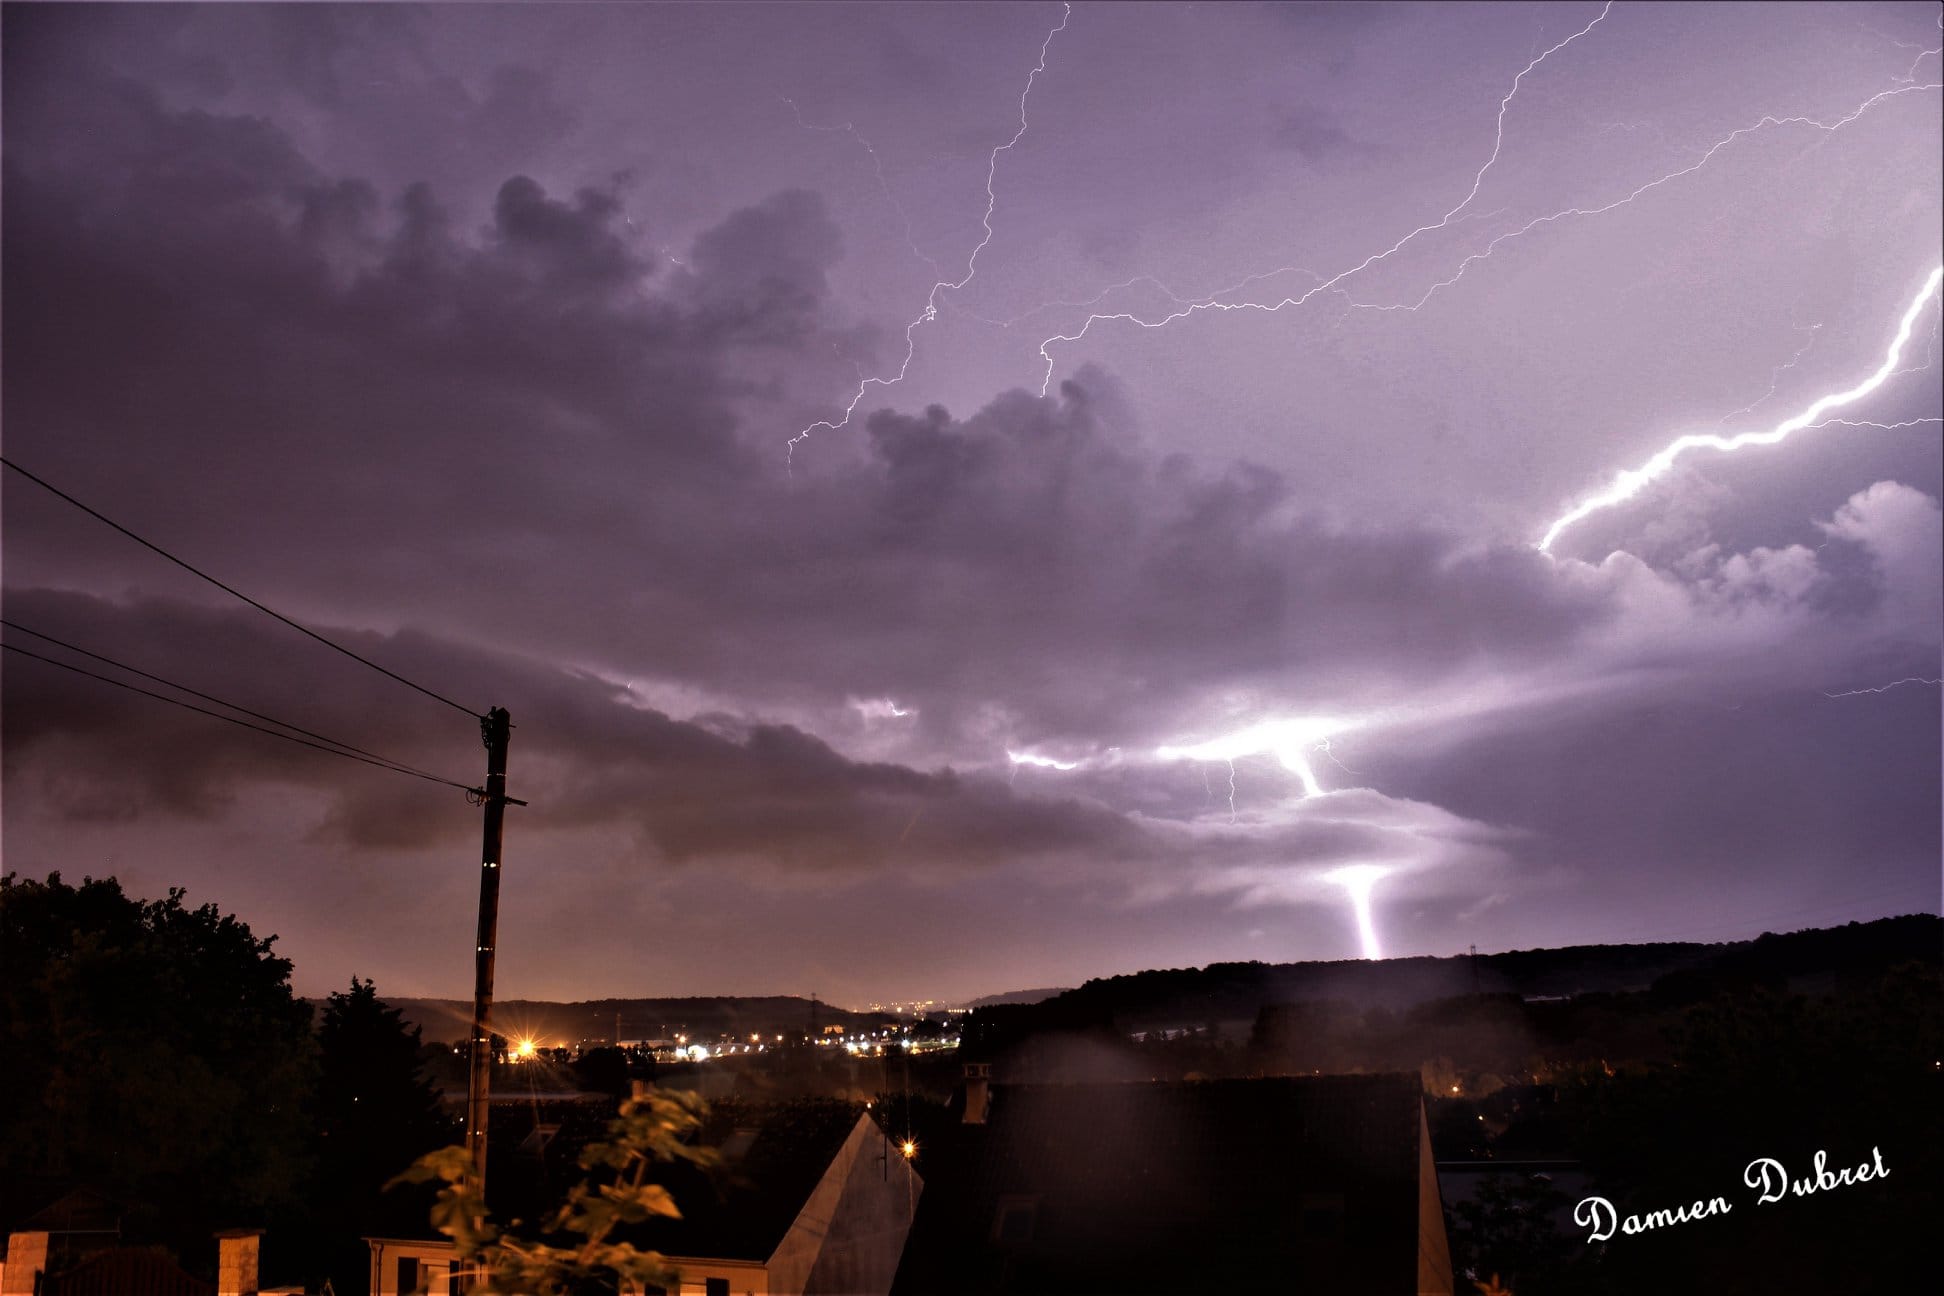 Magnifique chasse aux orages hier soir du côté de Cire les Mello, Rousseloy, Mouy et Ars. - 29/05/2018 23:00 - Damien Dubret